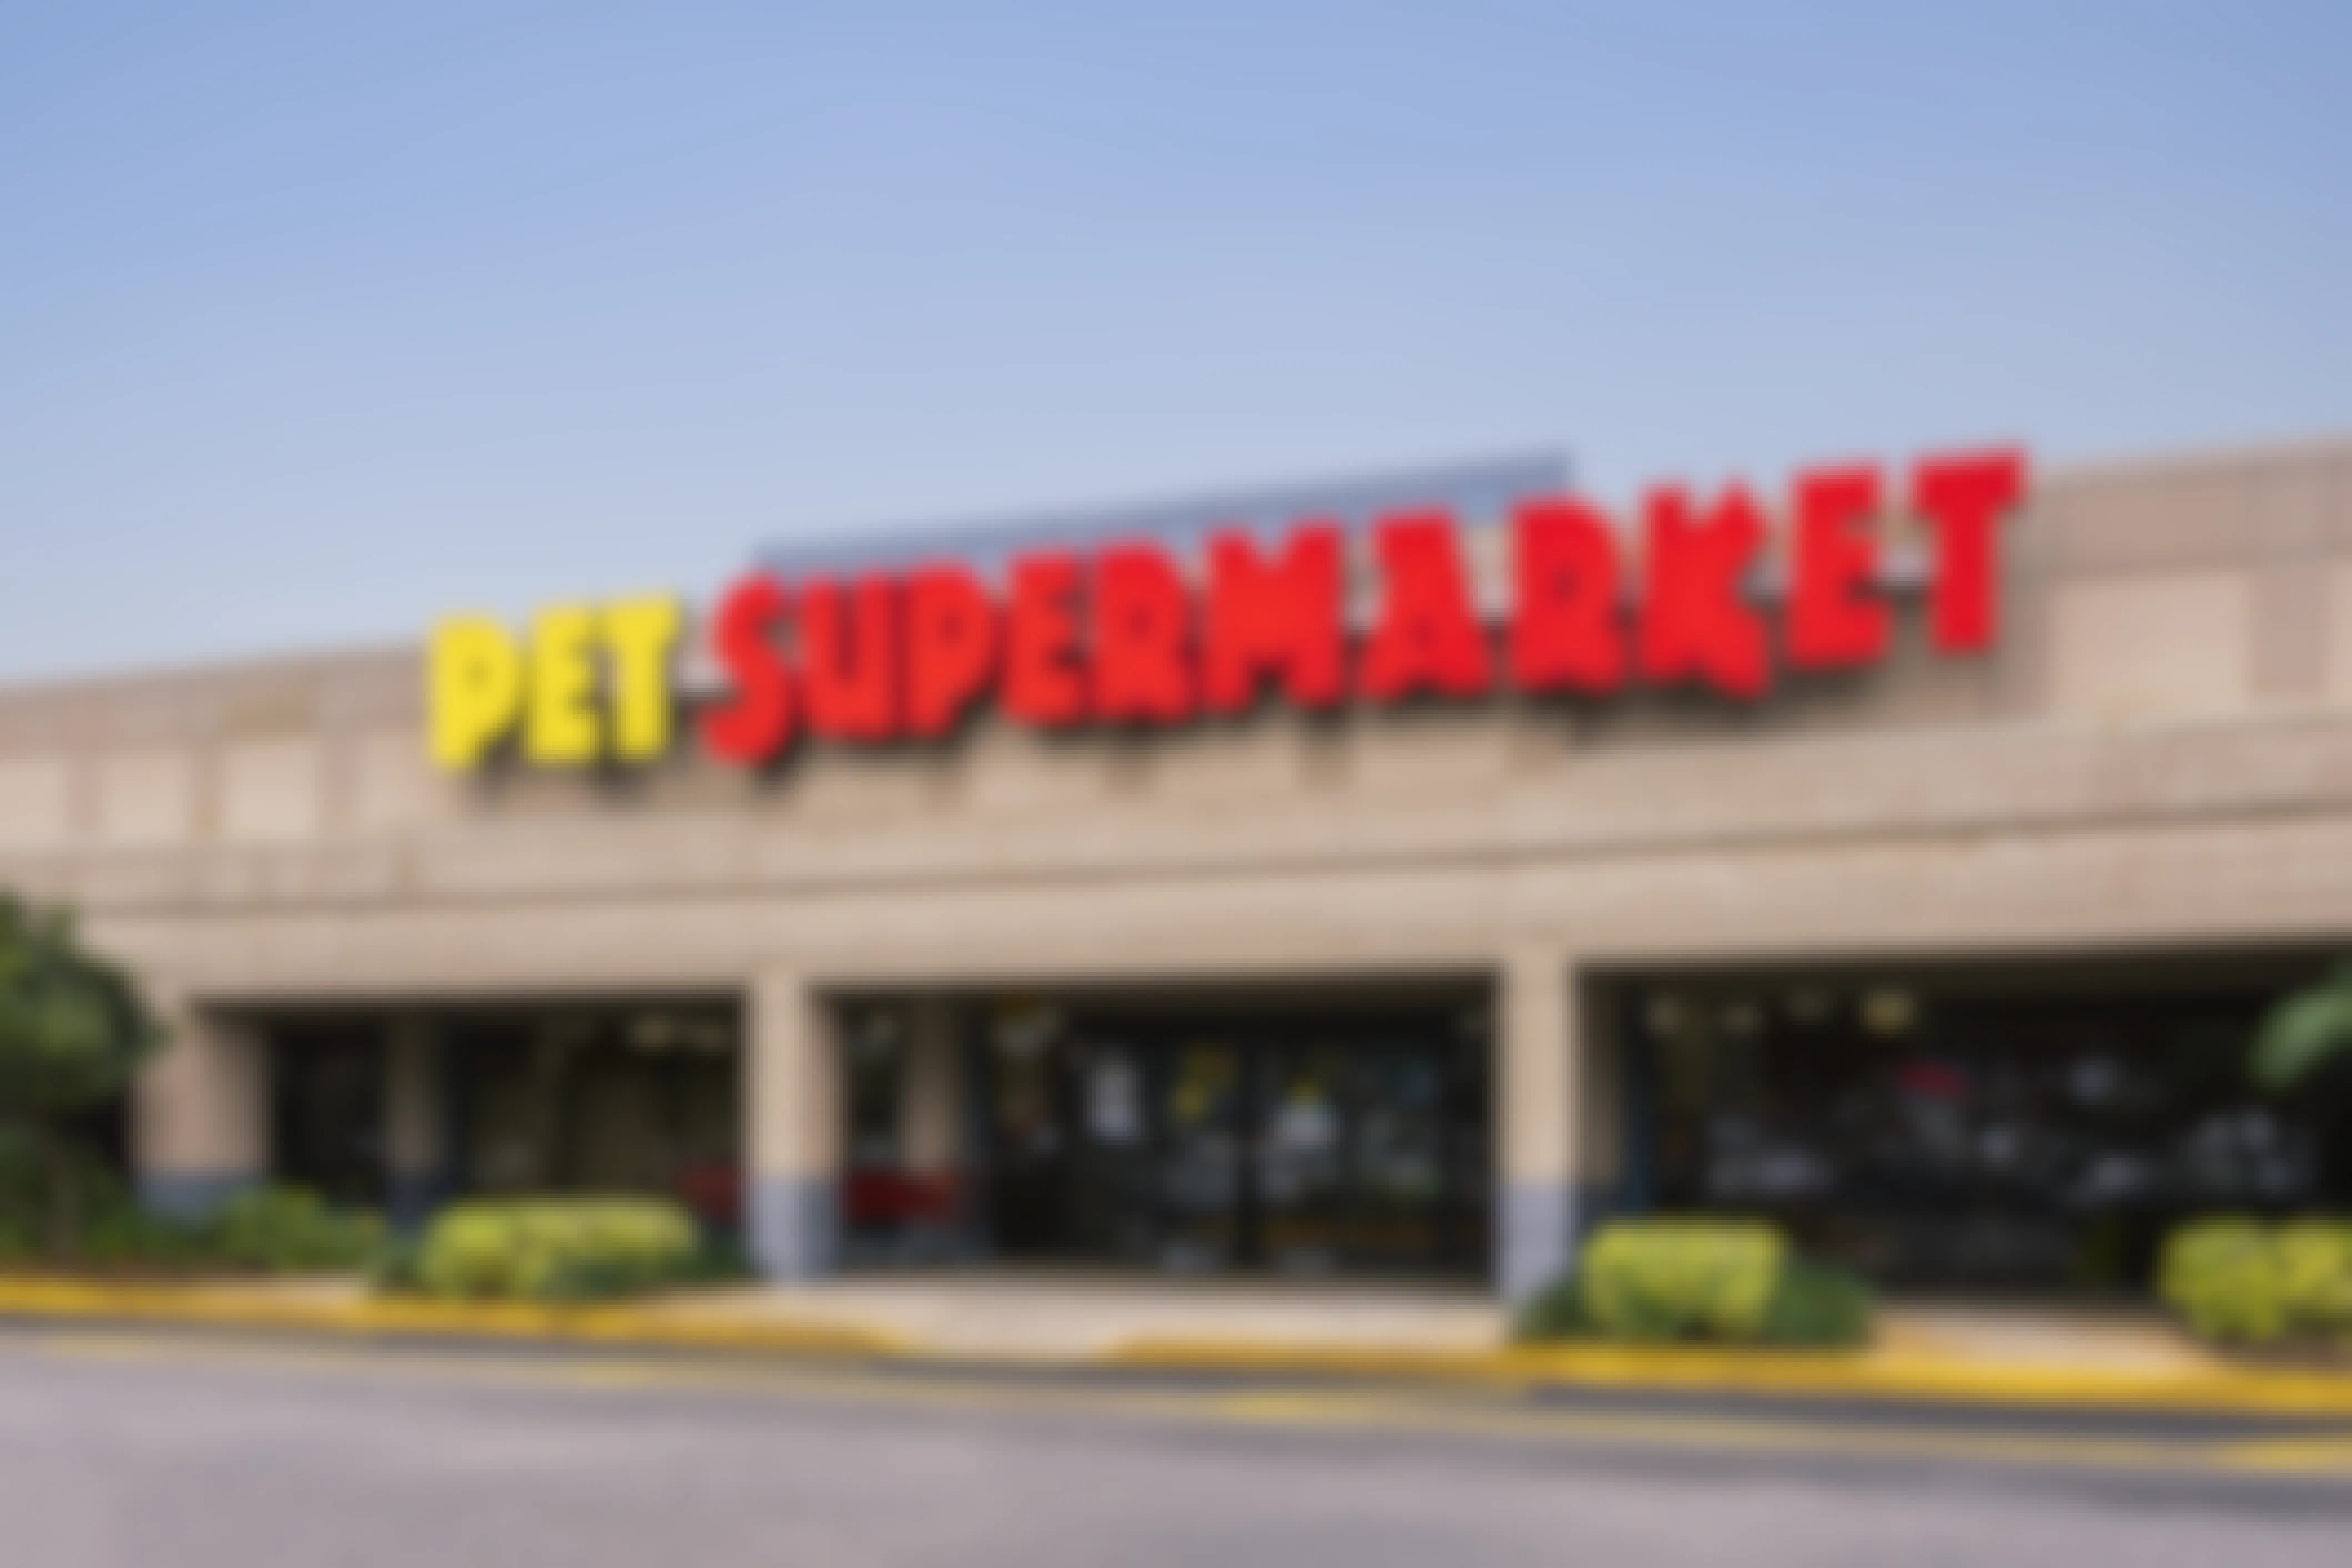 pet supermarket store building front entrance parking lot